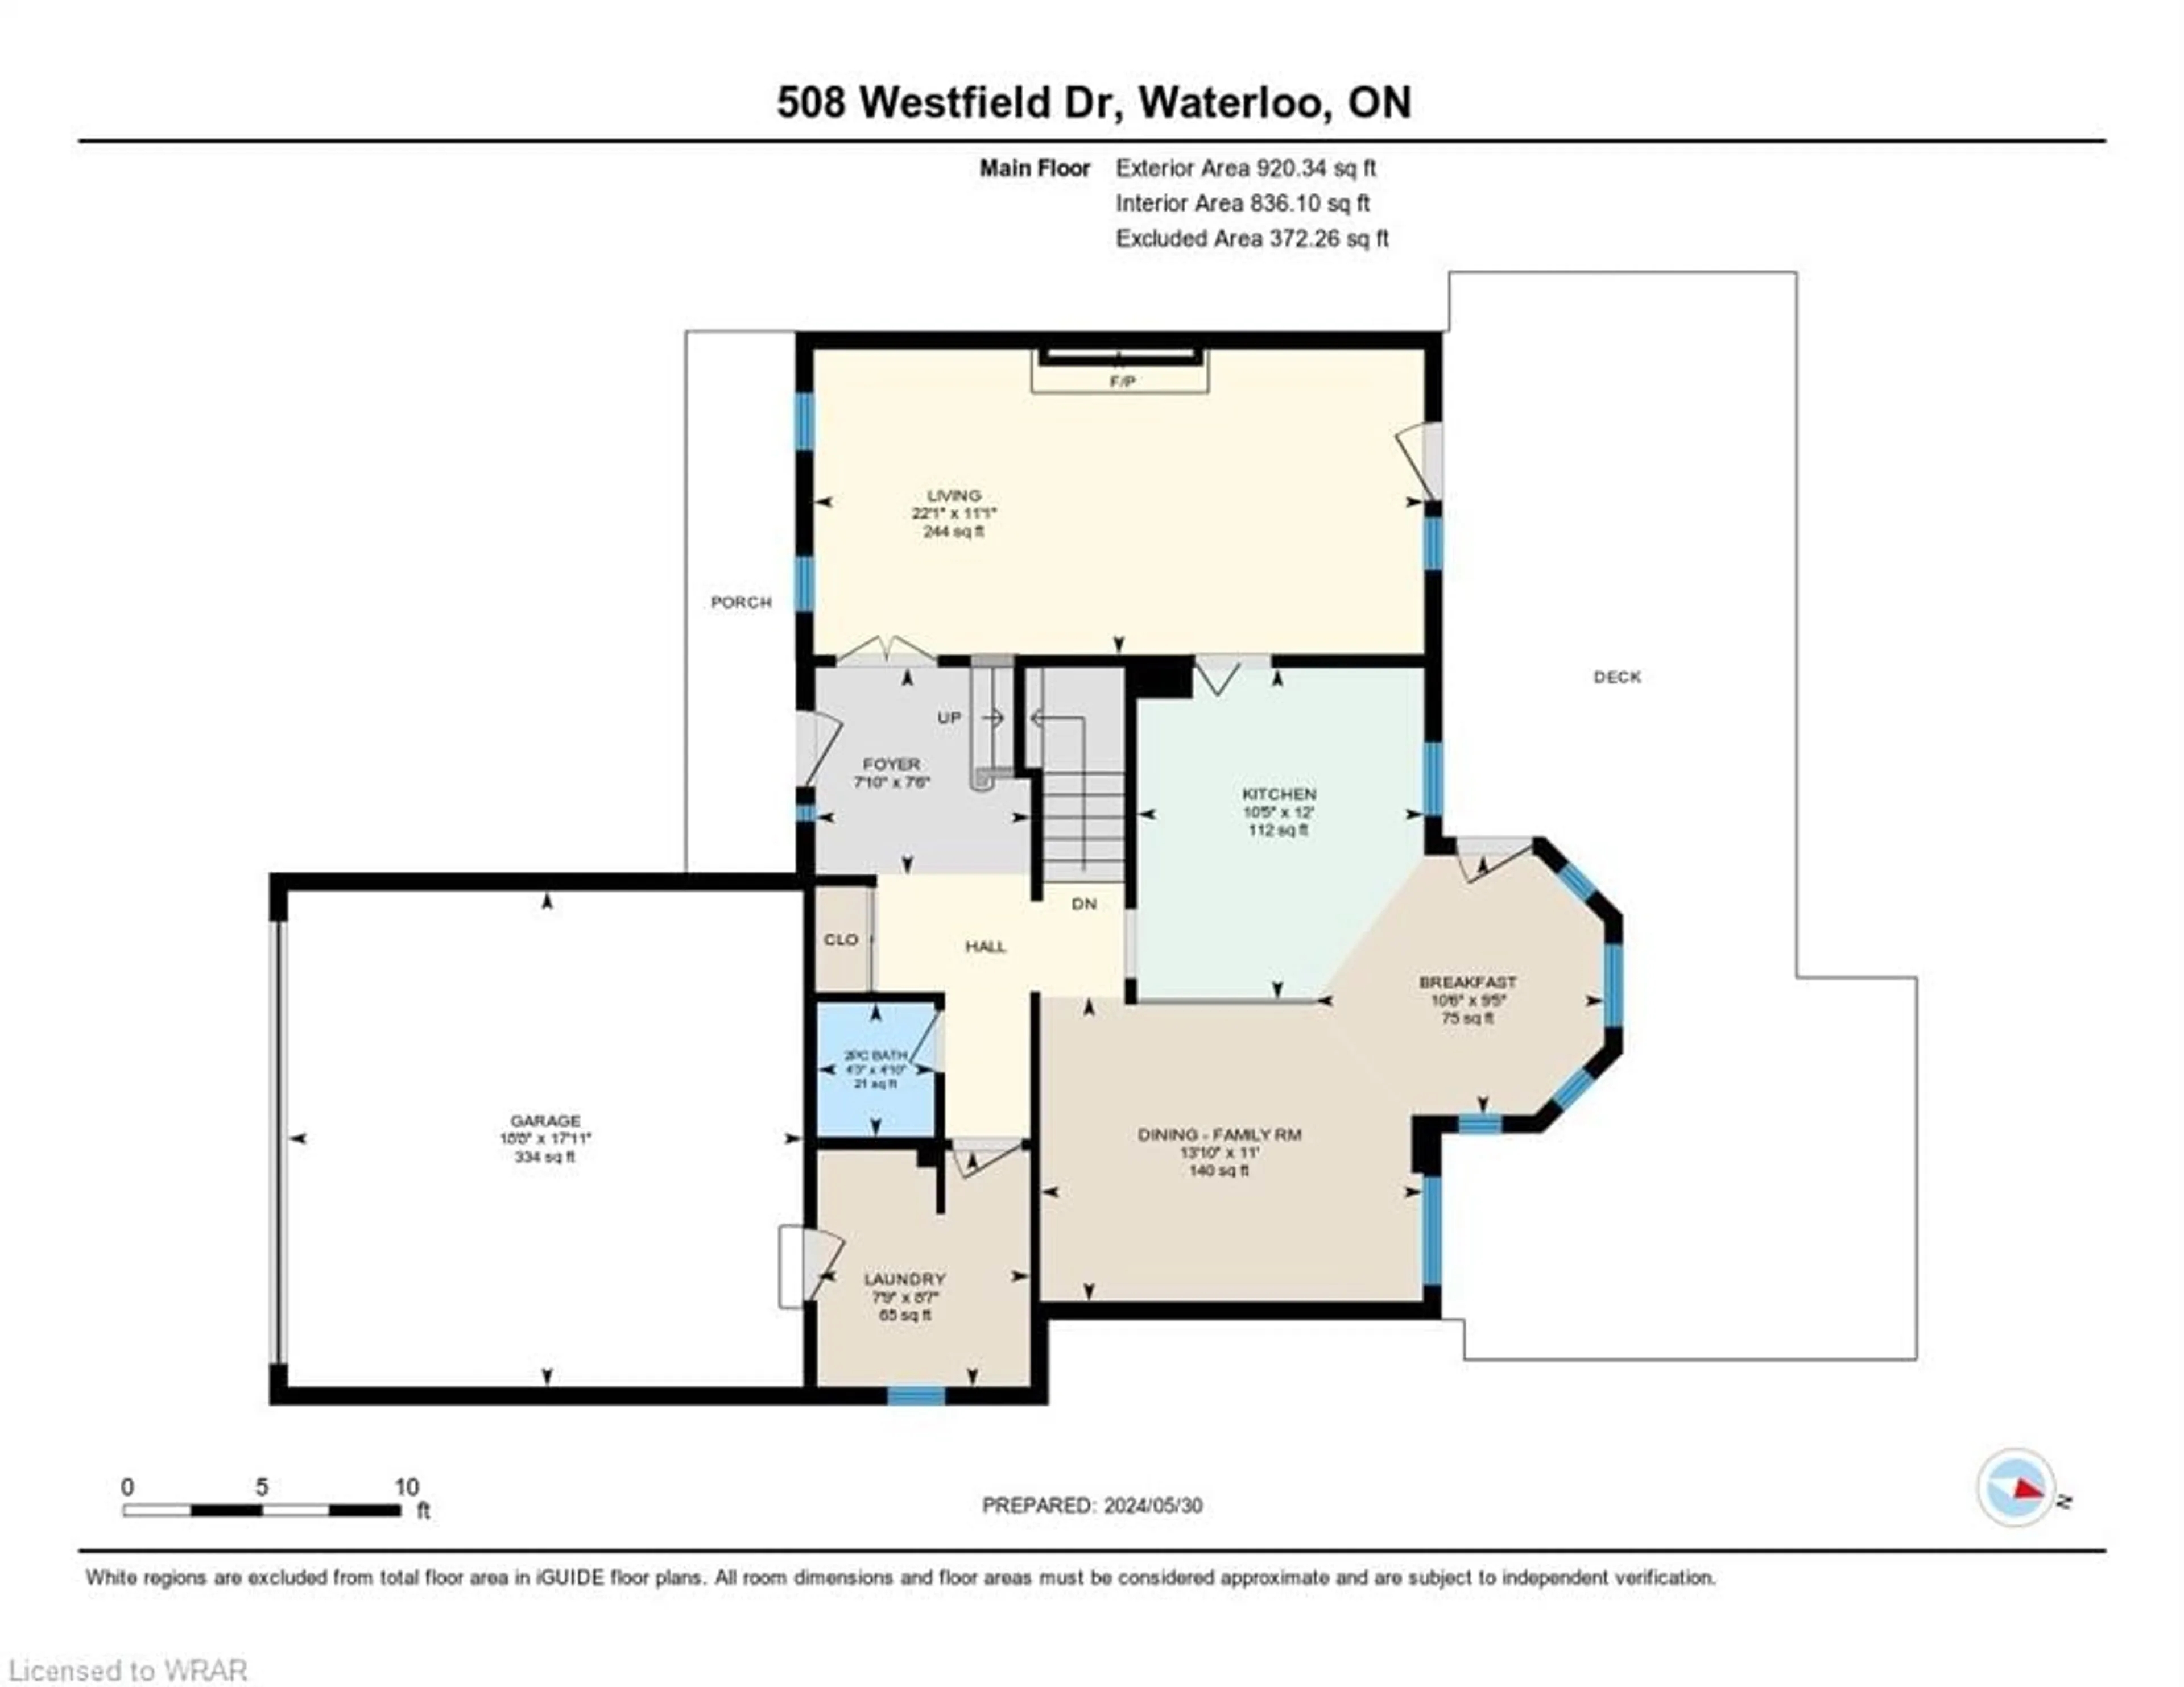 Floor plan for 508 Westfield Dr, Waterloo Ontario N2T 2C7